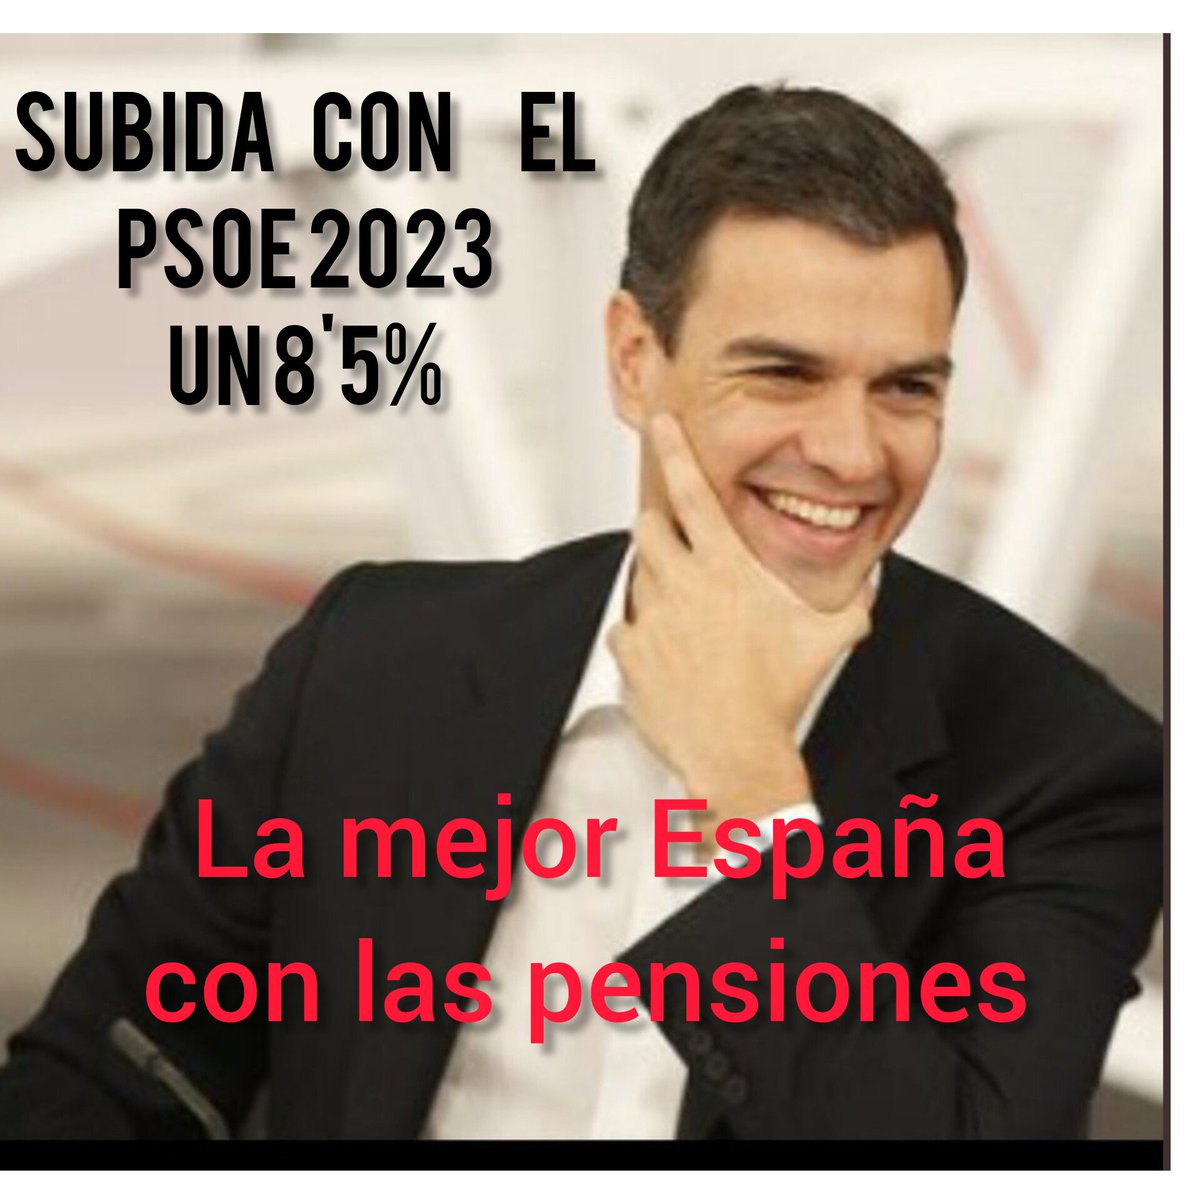 🆘#NoEsNo al amigo del narco. 

#LaMejorEspaña con las pensiones, la subida de las pensiones en 2023 de 8,5% con el @PSOE
📍𝗘𝘀𝘁𝗼𝘆 𝗖𝗢𝗡 𝗣𝗘𝗗𝗥𝗢 ‼️